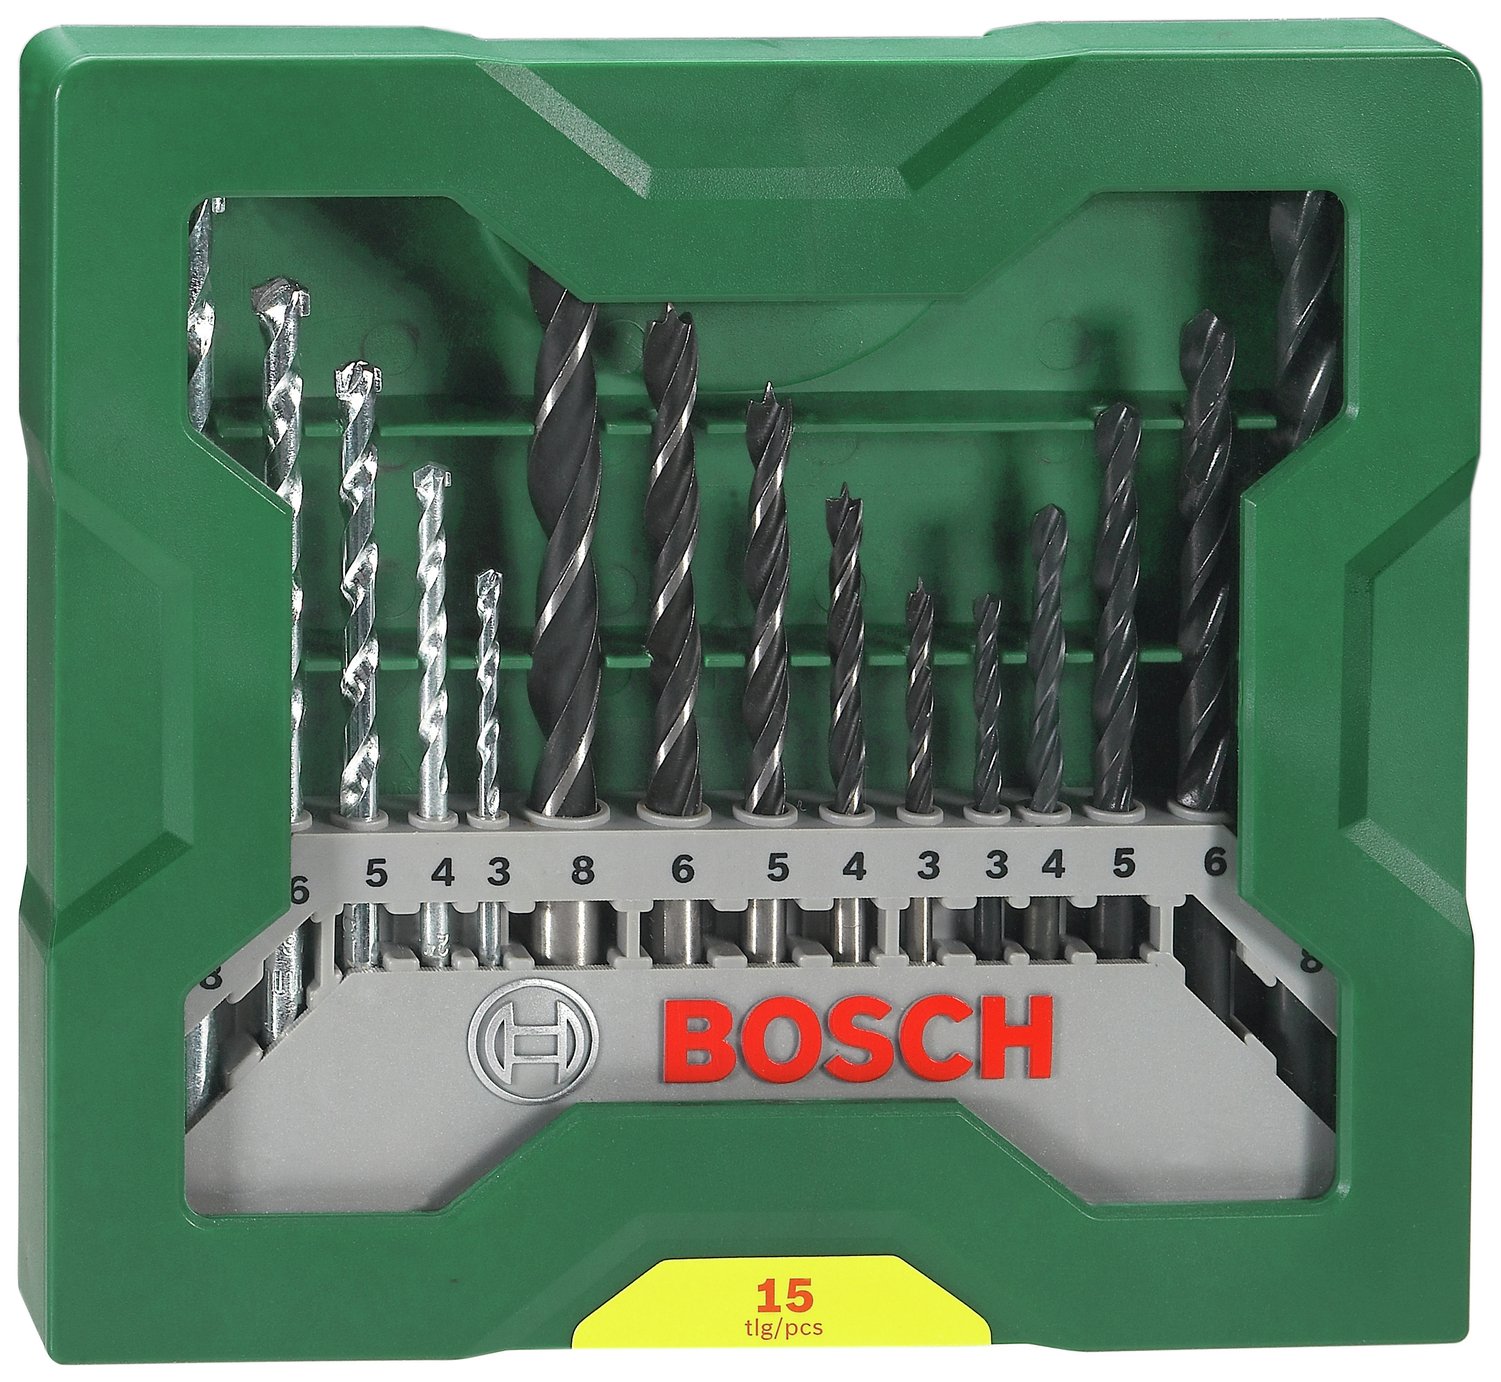 Bosch 15 Piece X-Line Drill Bit Set Review